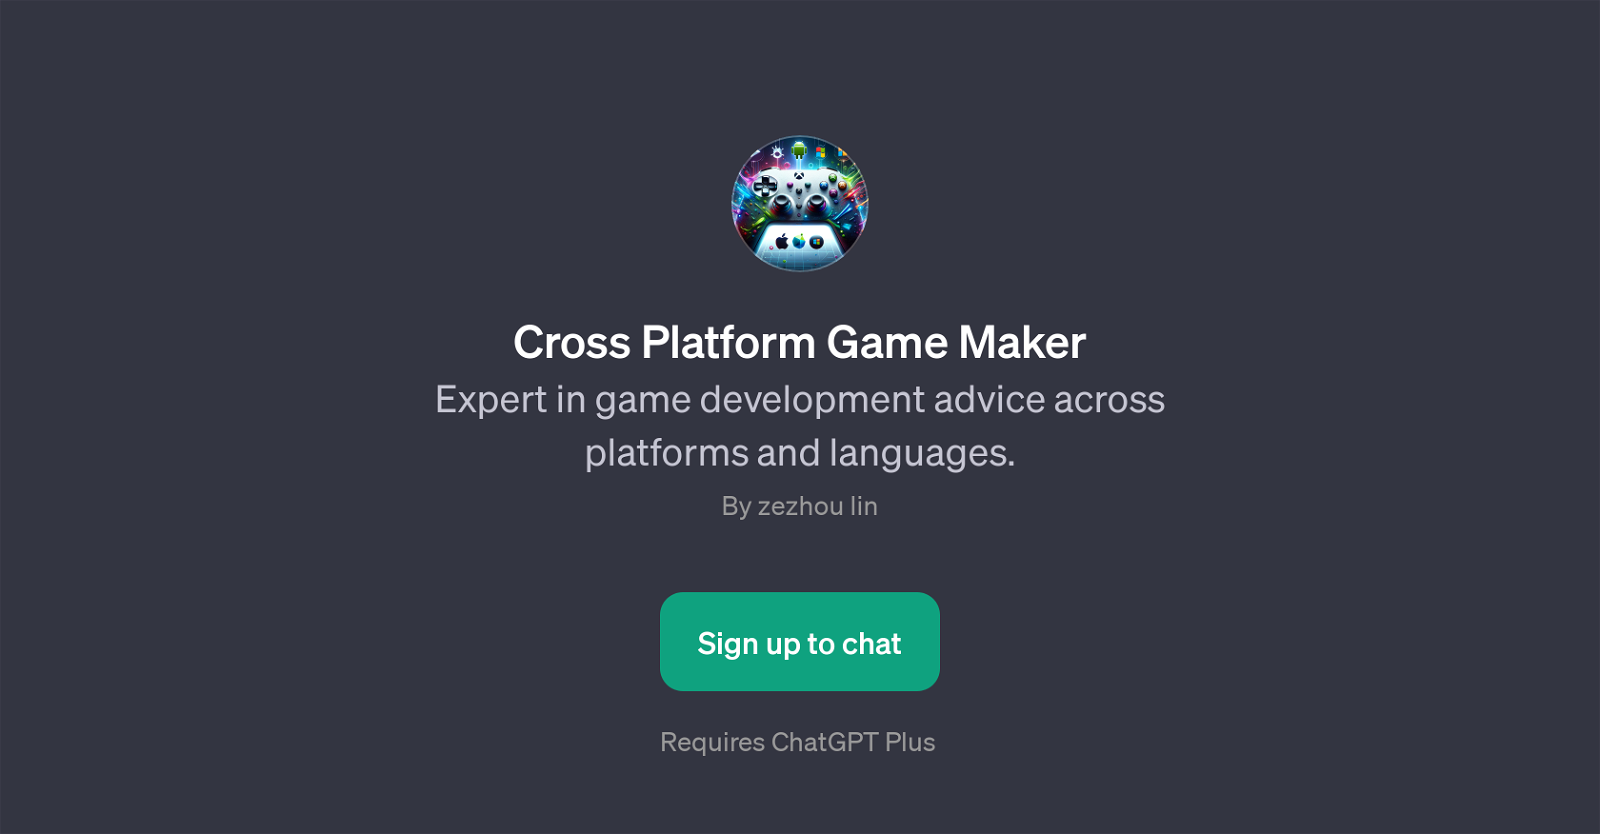 Cross Platform Game Maker website